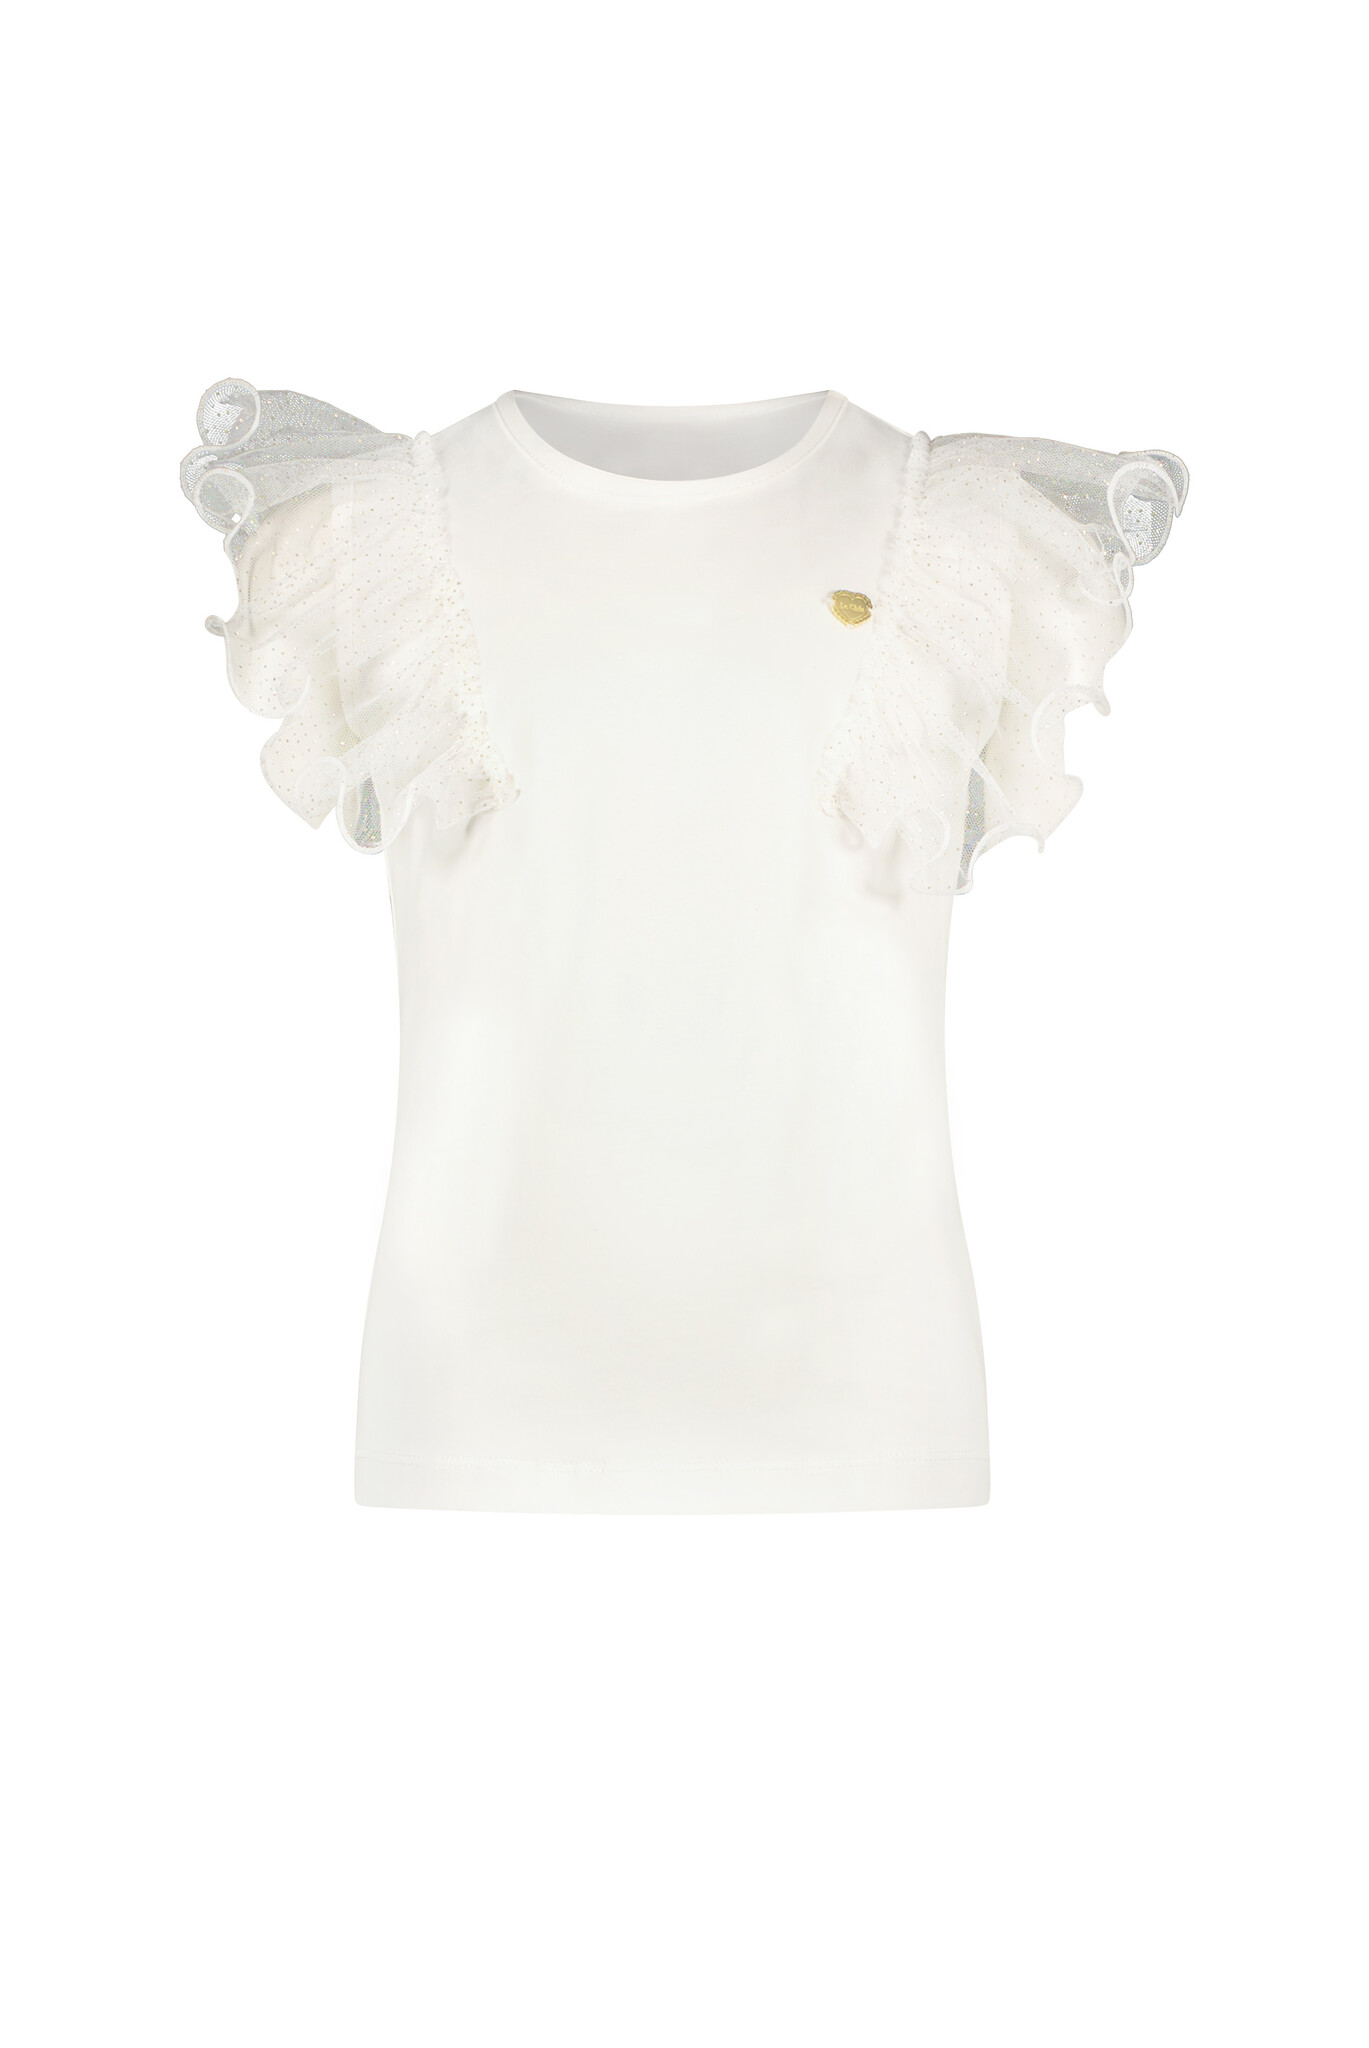 Le Chic C312-5402 Meisjes T-shirt - Off White - Maat 164